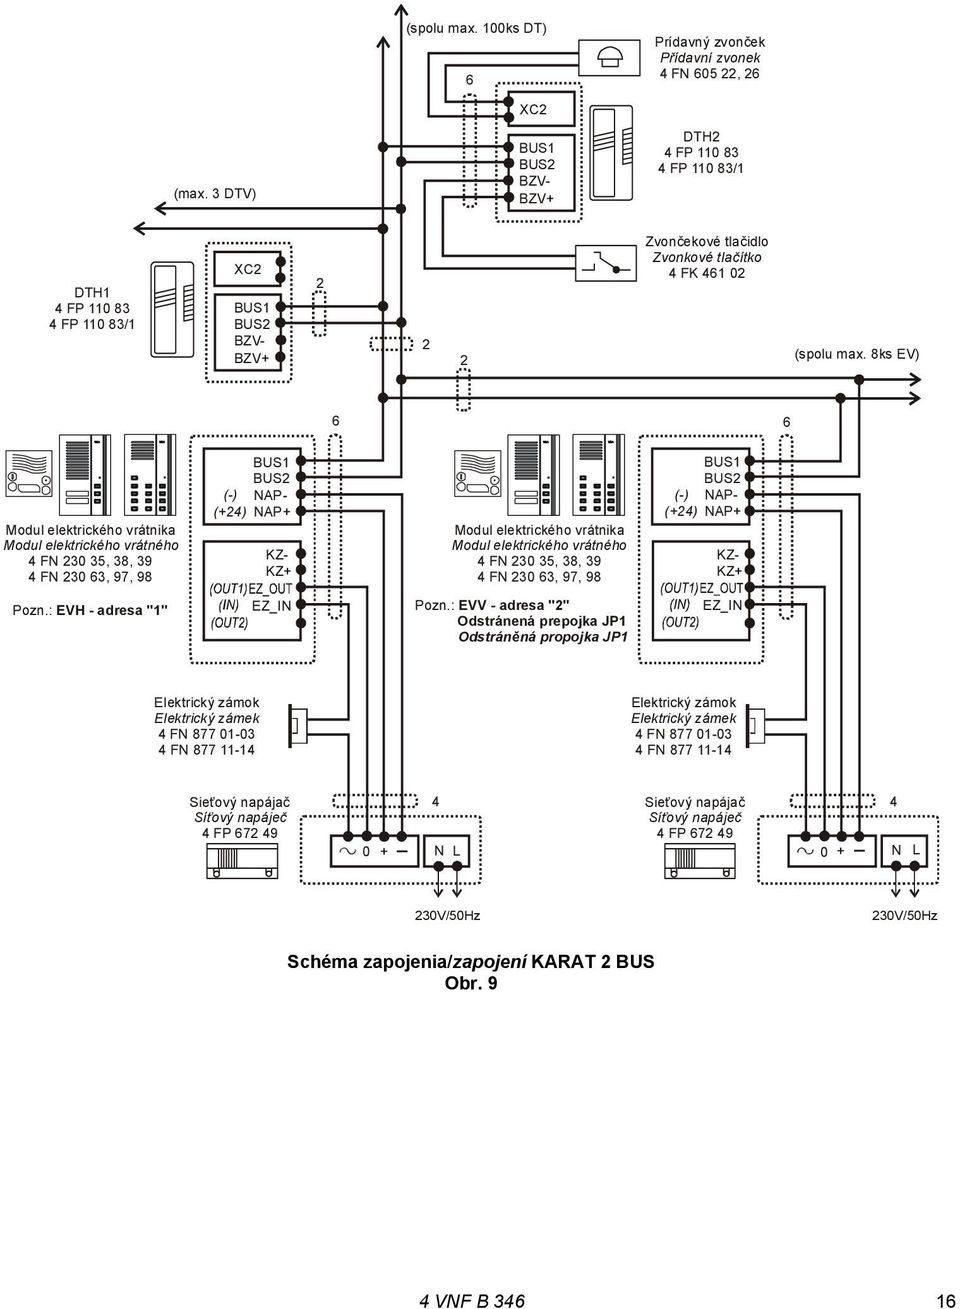 8ks EV) 6 6 Modul elektrického vrátnika Modul elektrického vrátného 4 FN 230 35, 38, 39 4 FN 230 63, 97, 98 KZ- KZ+ BUS1 BUS2 (-) NAP- (+24) NAP+ Modul elektrického vrátnika Modul elektrického